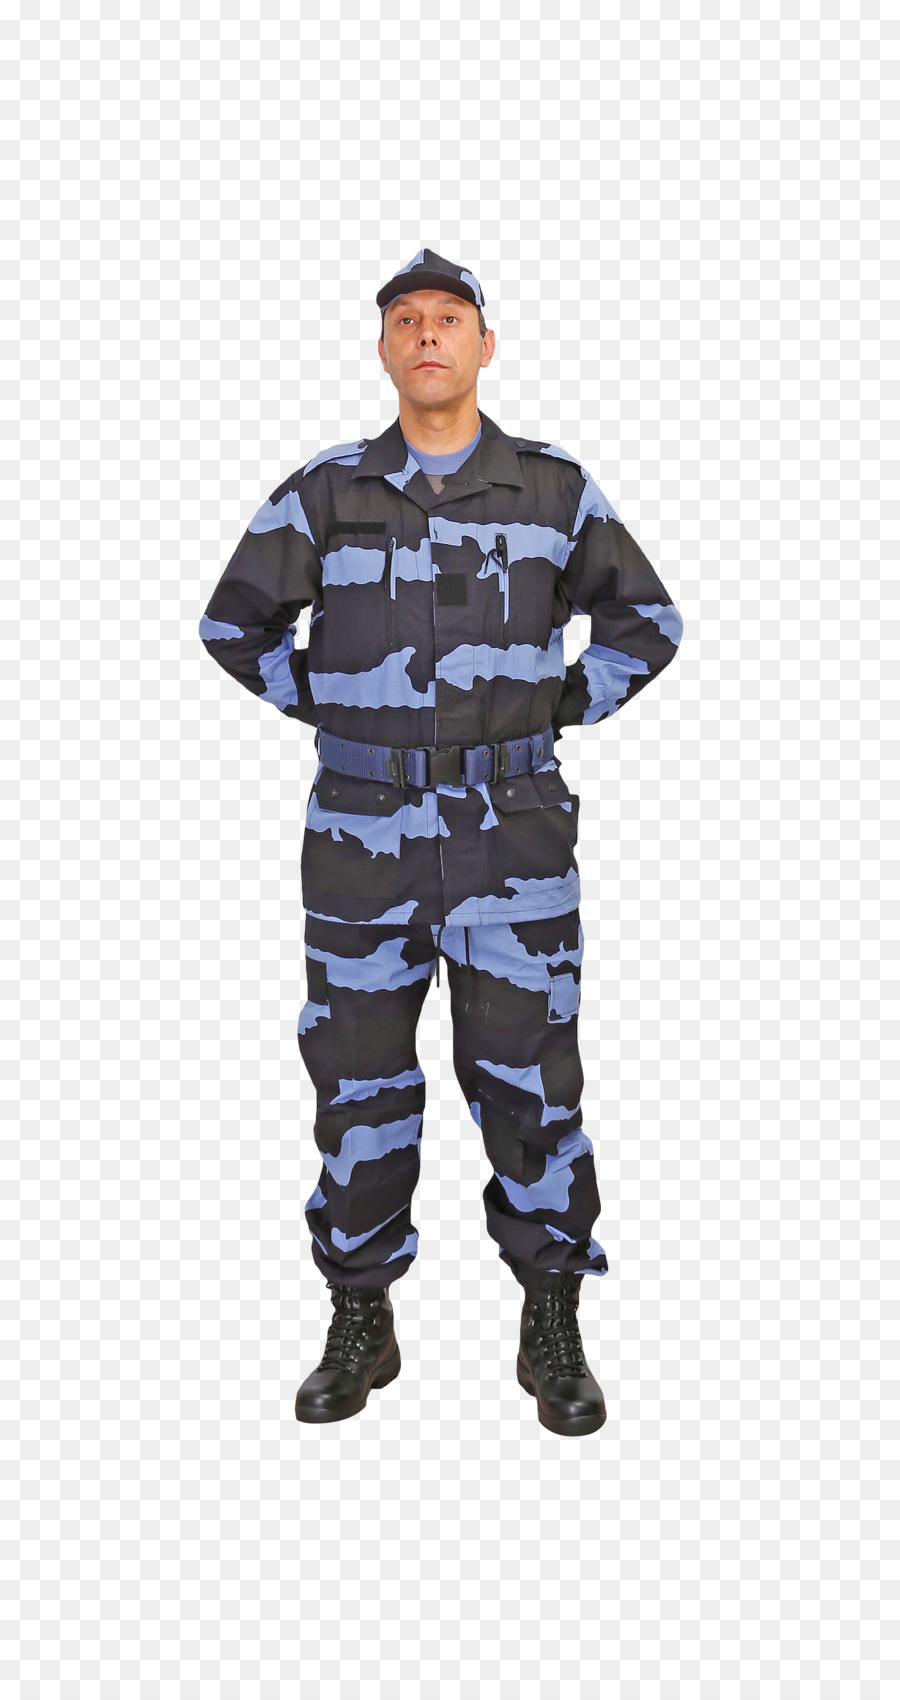 Militare mimetica uniforme Militare, Soldato dell'Esercito - soldato